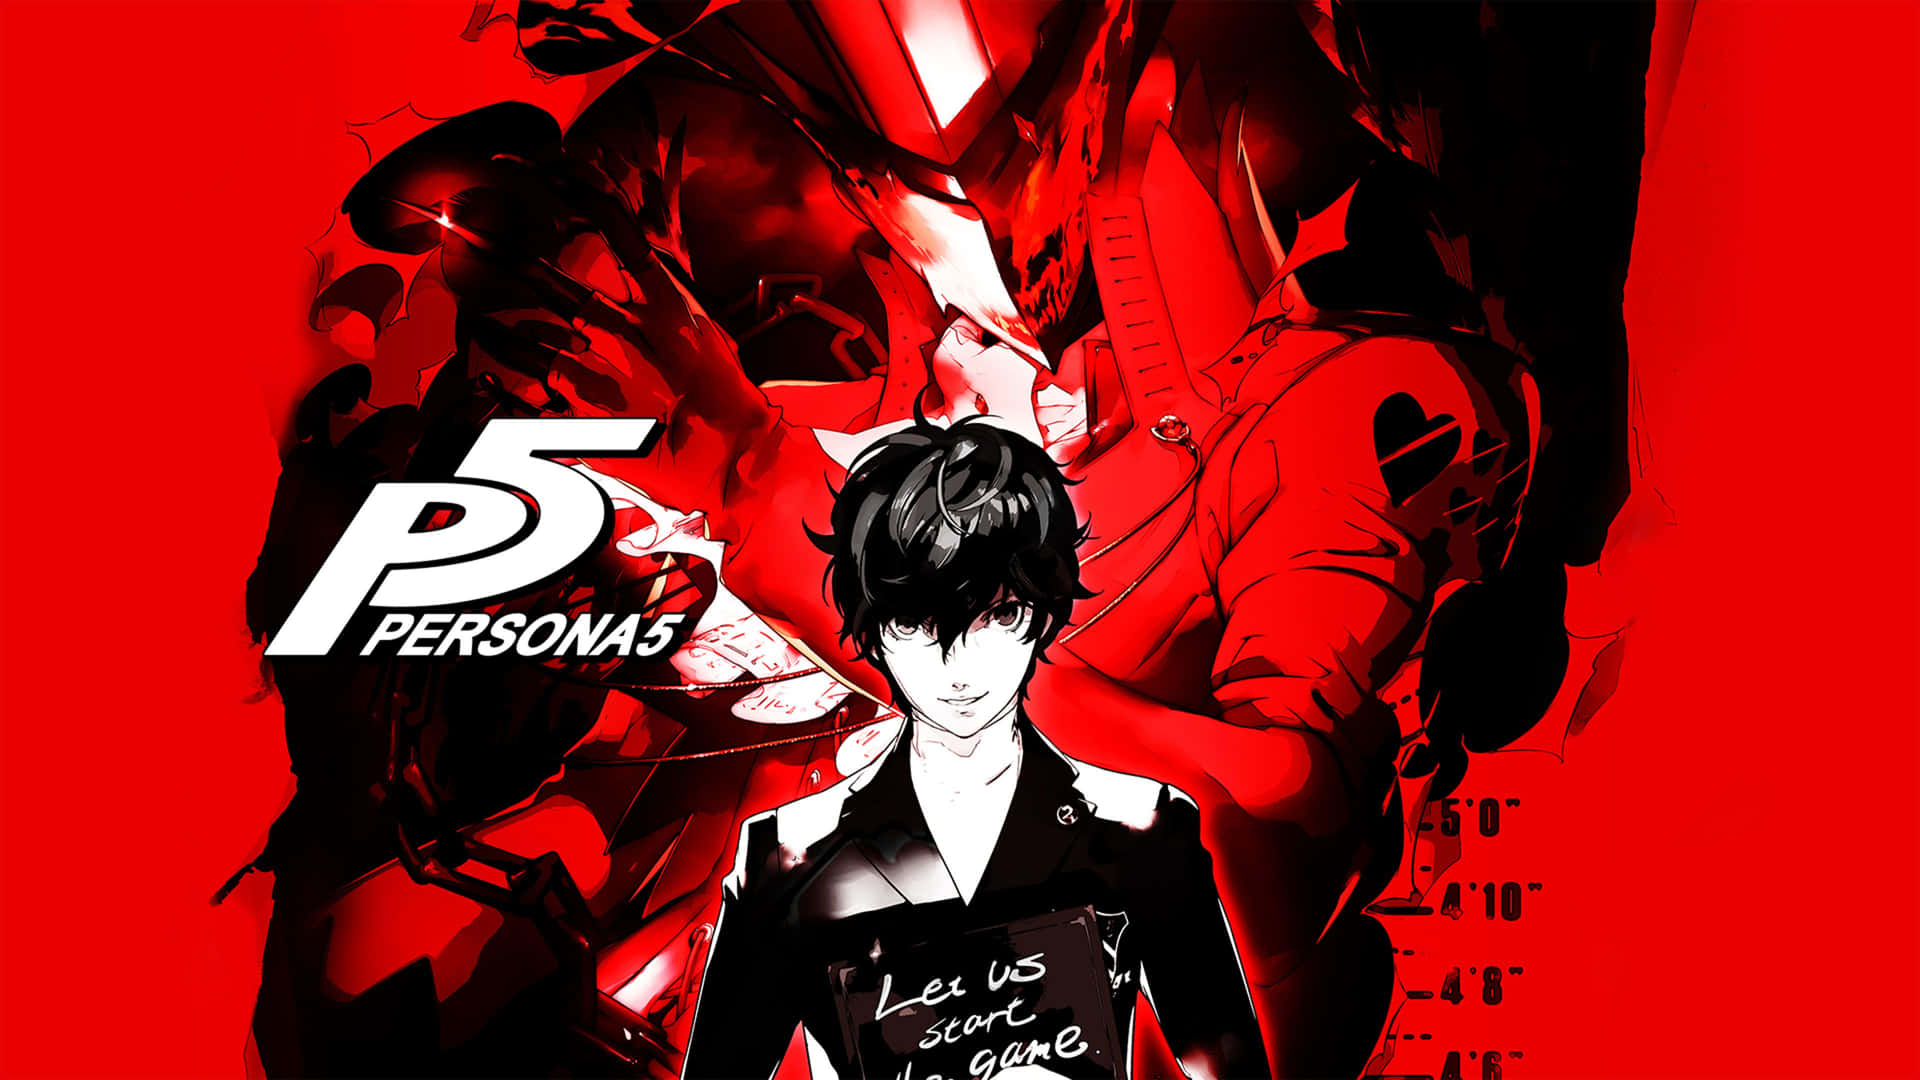 Det officielle logo til rolle-spillet video spil Persona 5. Wallpaper